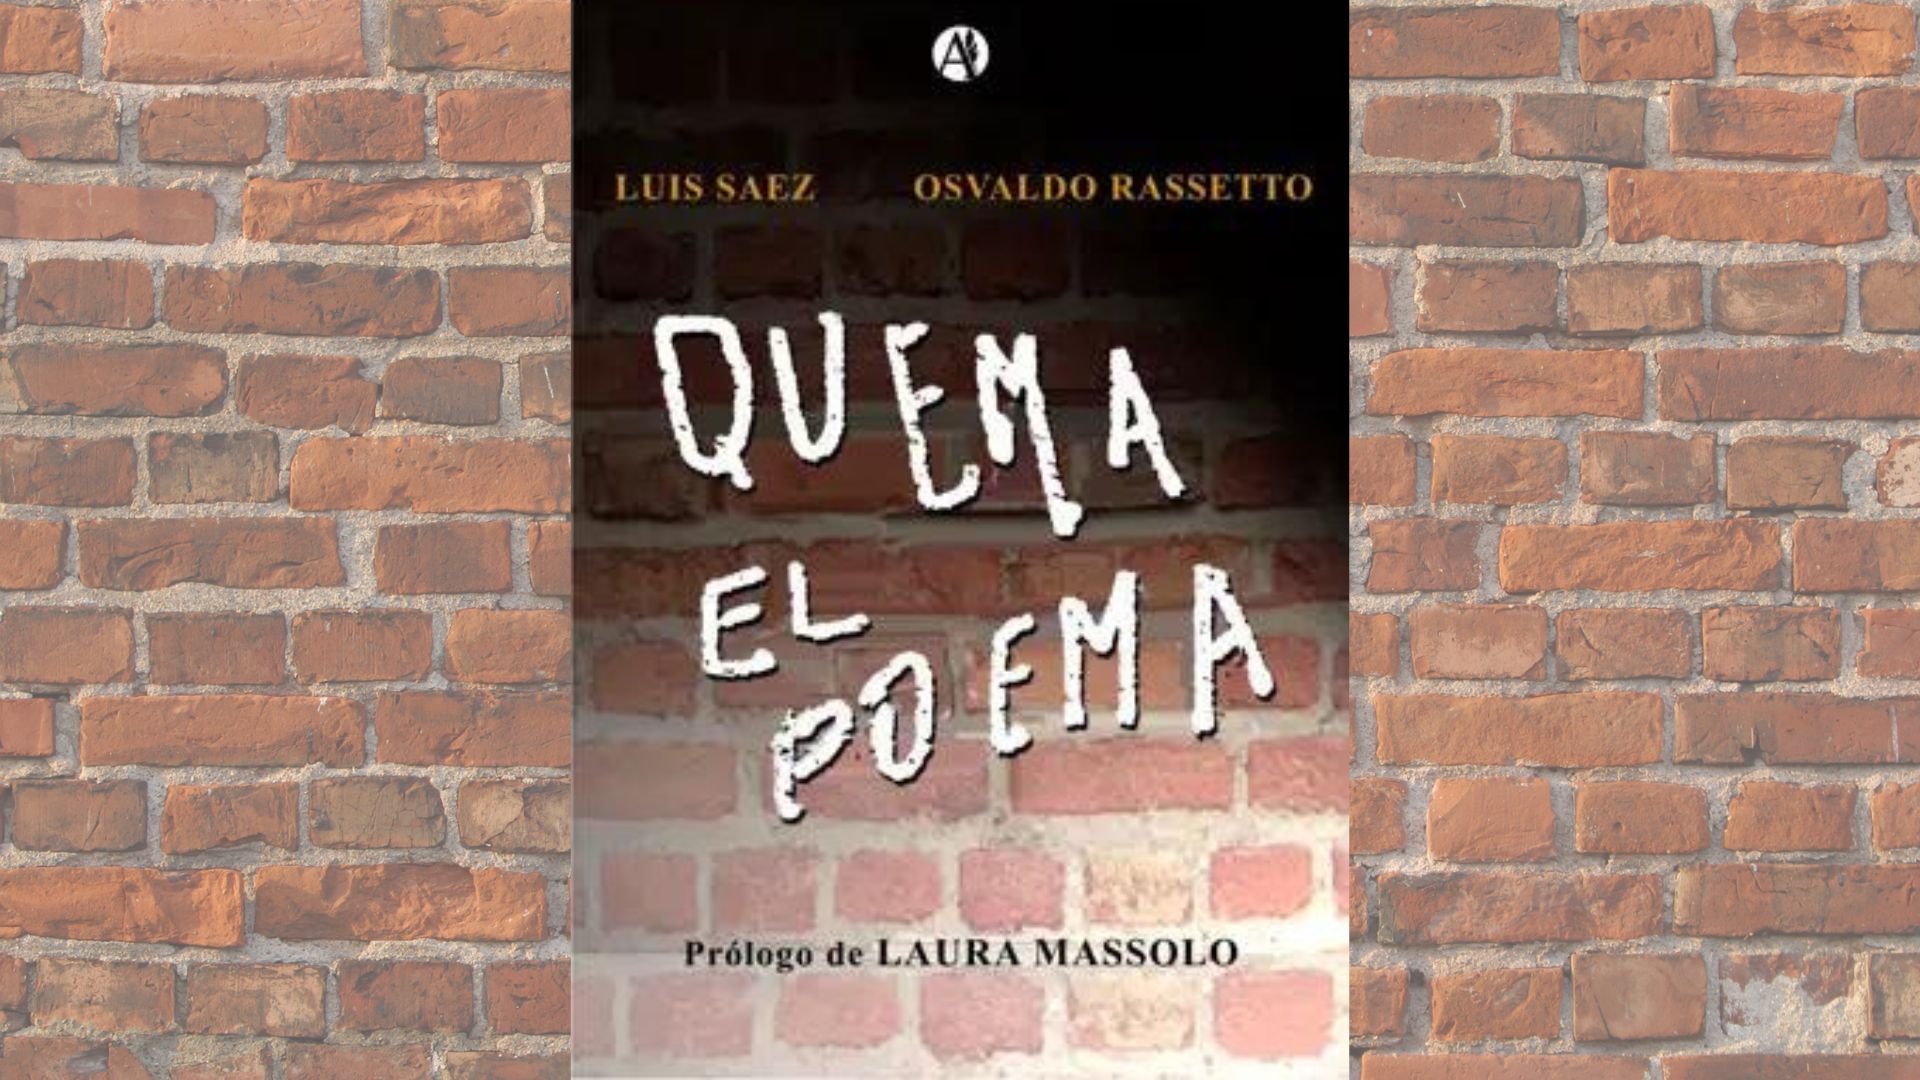 “Quema el poema”: Este sábado se presentará el libro de Luis Sáez y Osvaldo Rassetto en Morón